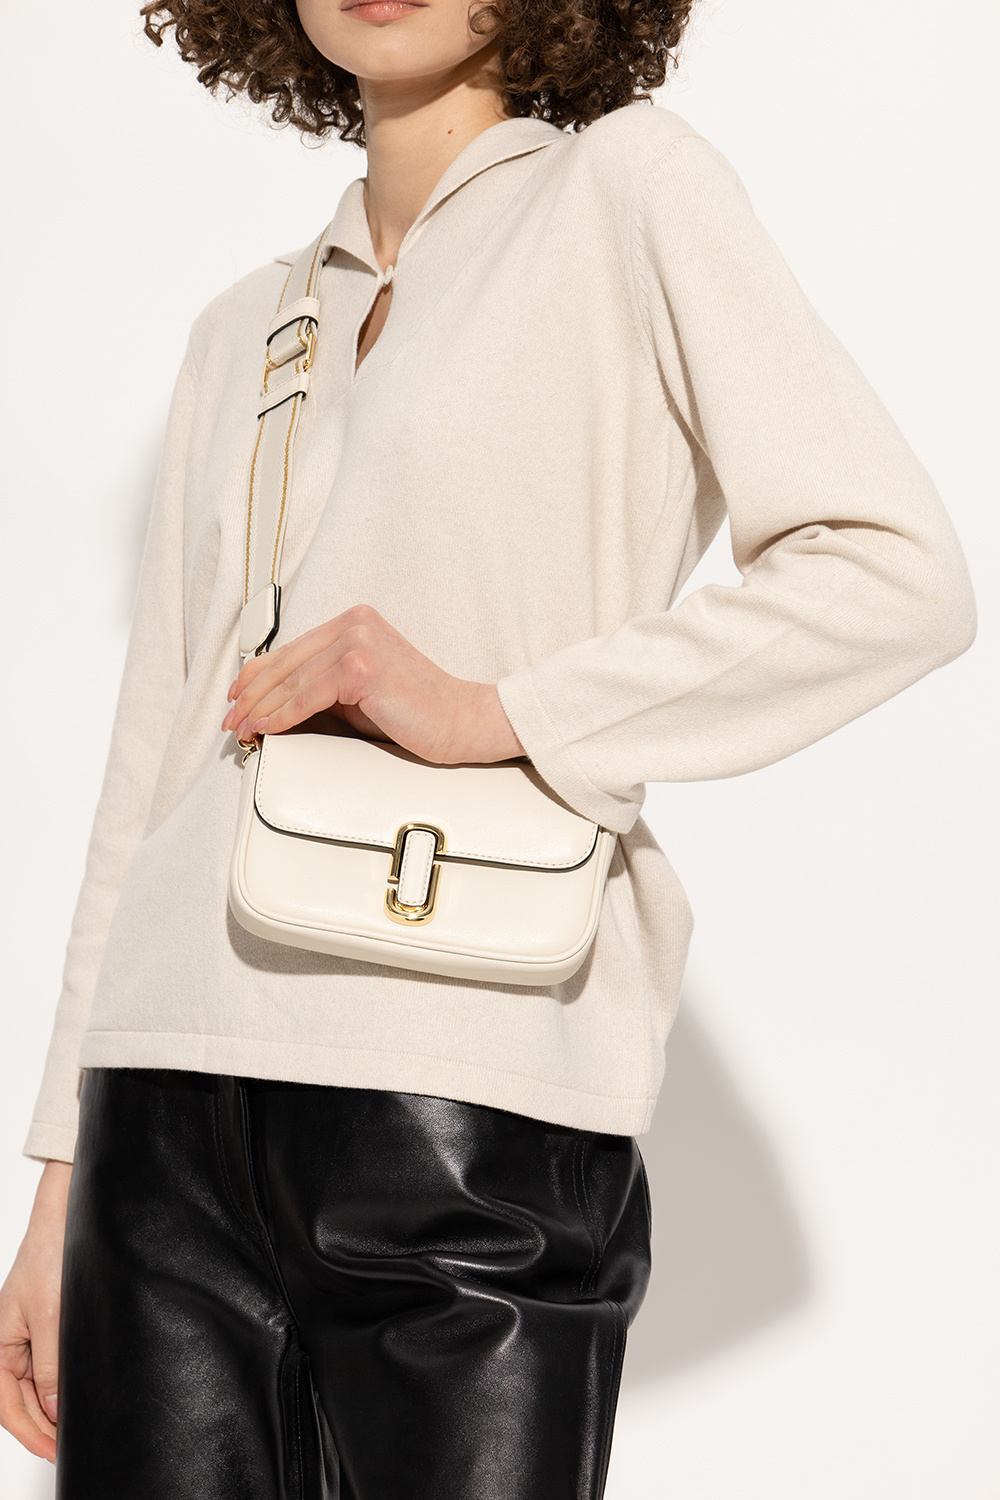 Marc Jacobs Women's The J Marc Mini Shoulder Bag, Black, One Size:  Handbags